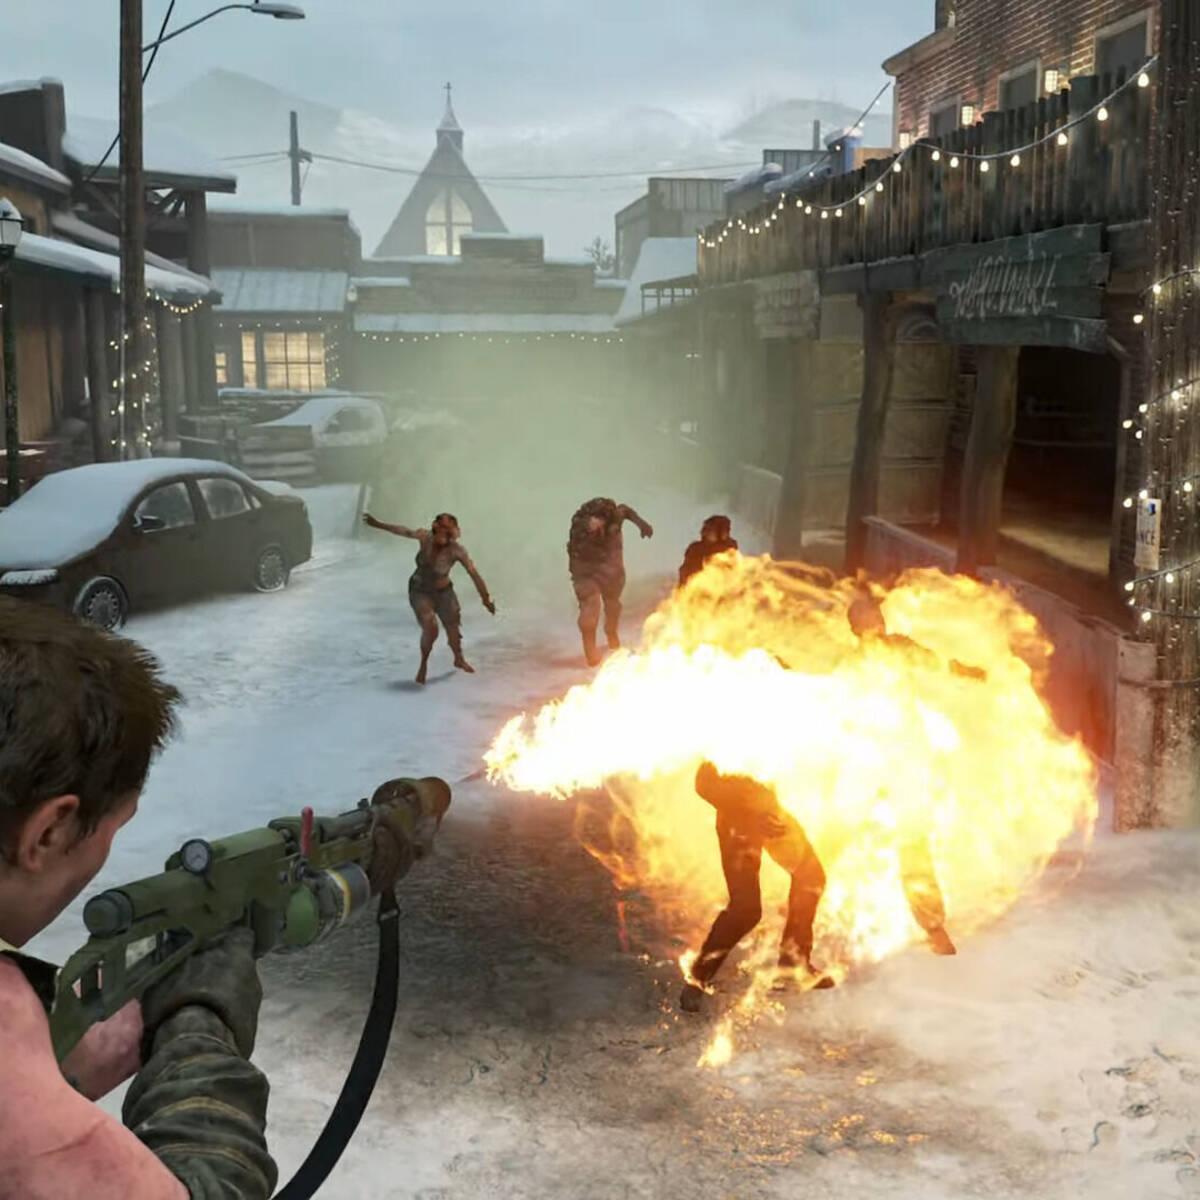 The Last of Us Parte II: Remastered desvela sus nuevos trofeos en PS5